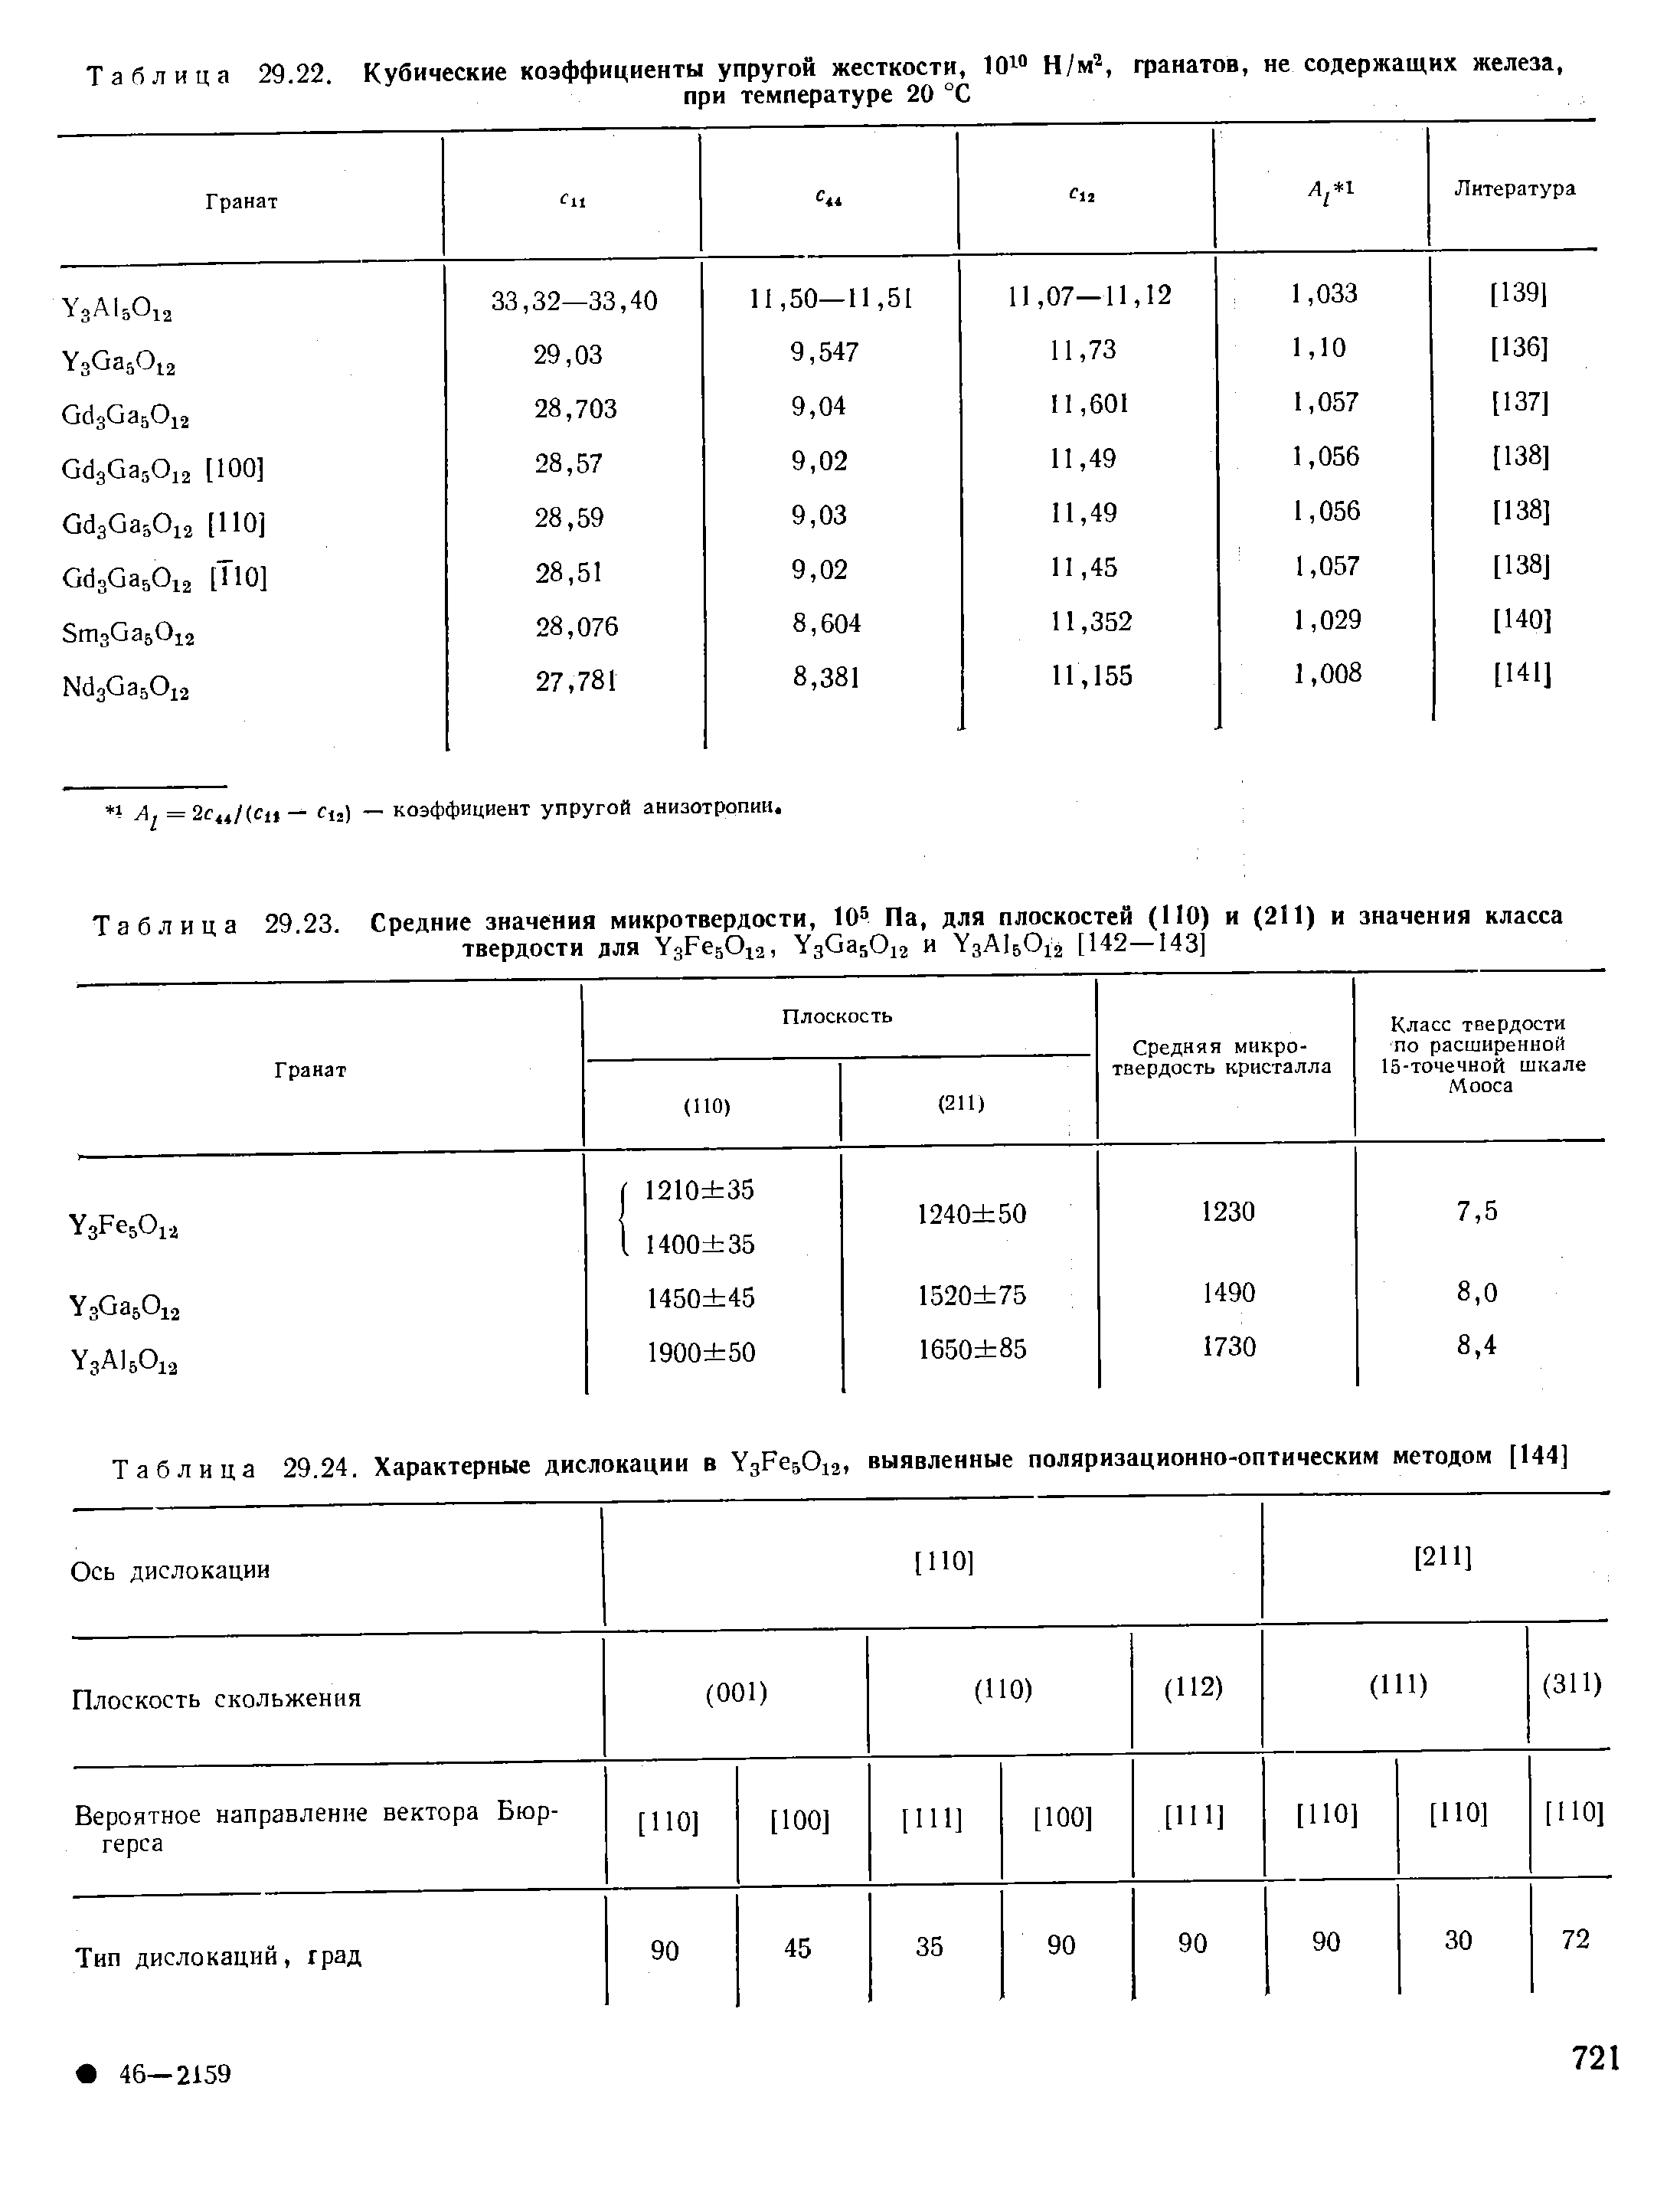 Таблица 29.24. Характерные дислокации в YgFejOia, выявленные поляризационно-оптическим методом [144]
